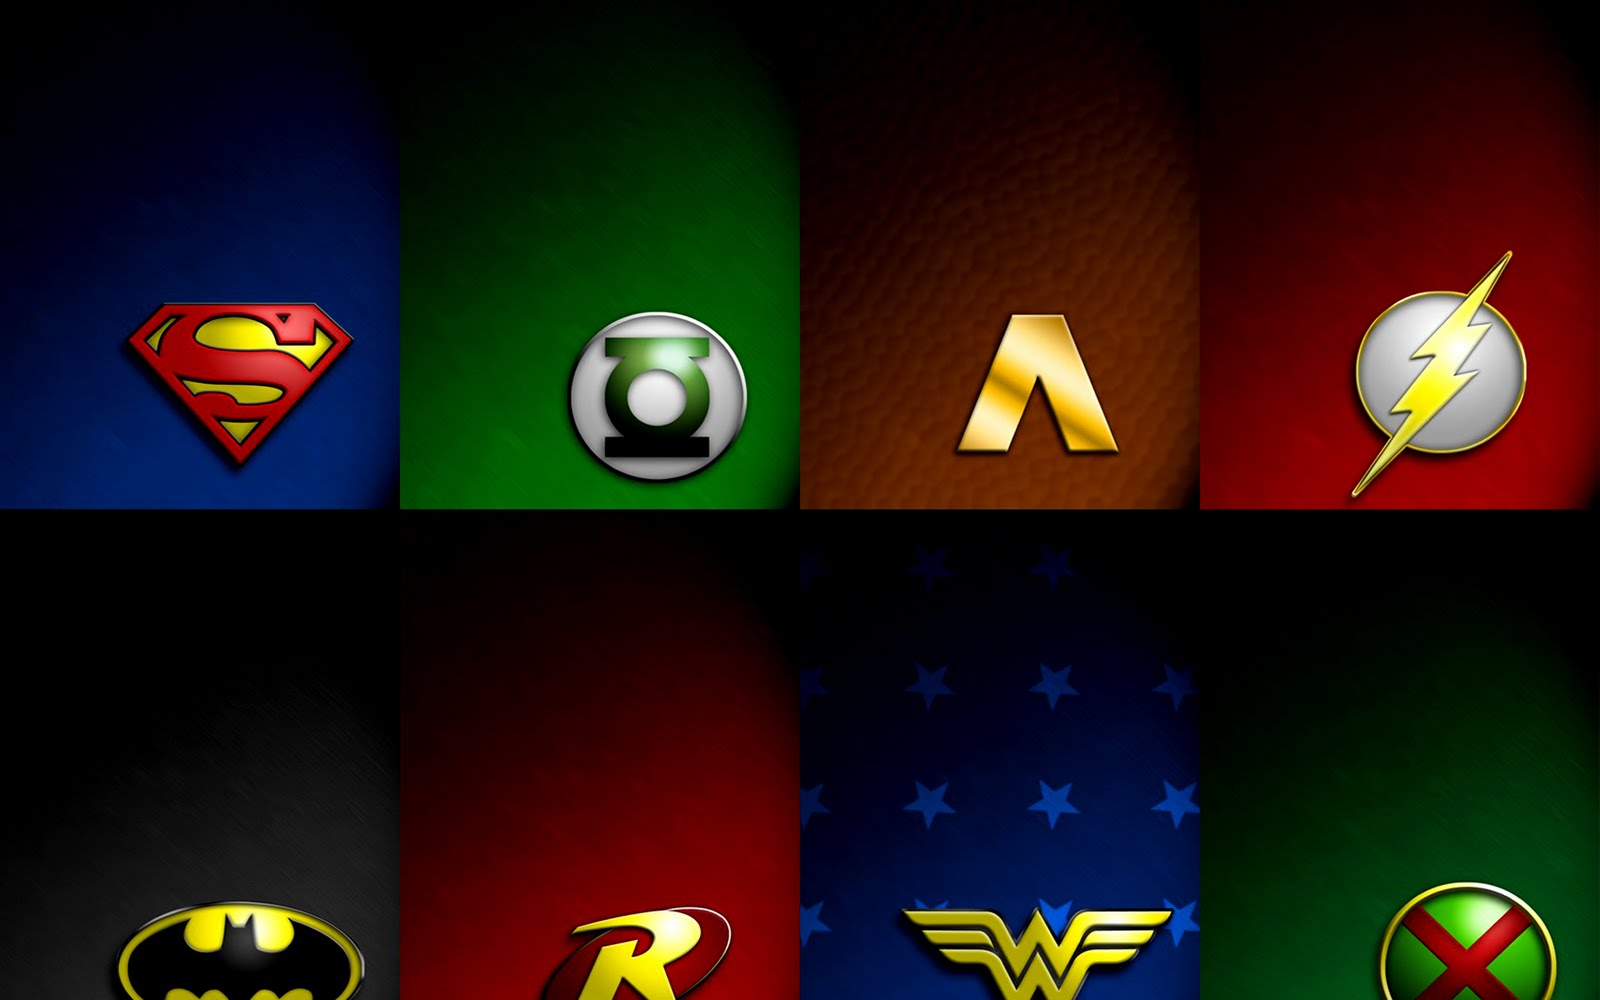 DC Comics Super Heroes Symbols Logos HD Wallpaper wwwVvallpaperNet